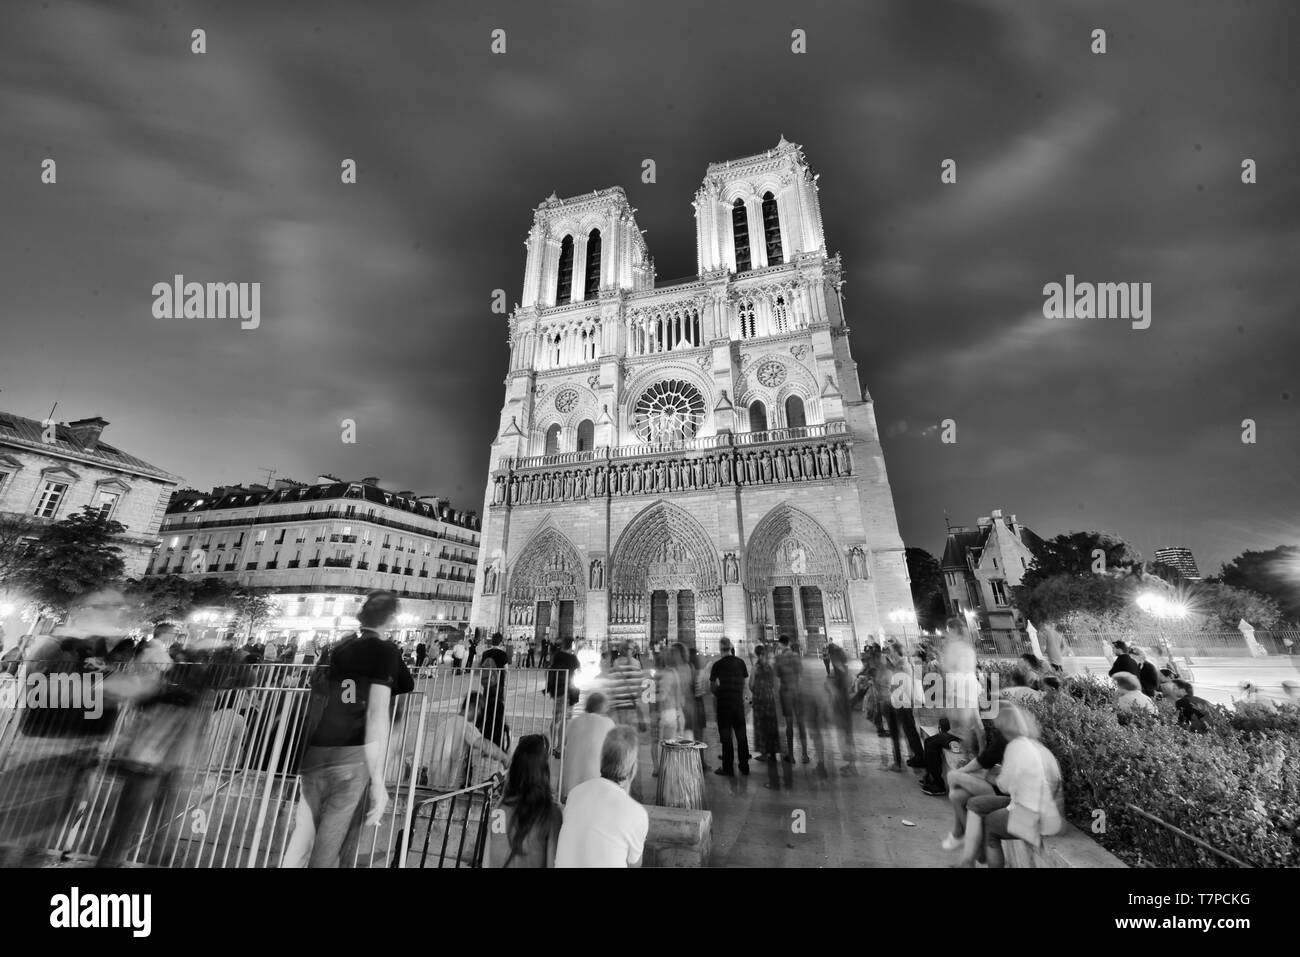 PARIS - JUNI 2014: Notre Dame Kathedrale bei Nacht mit Touristen. Notre Dame wird von 12 Millionen Menschen jährlich besucht. Stockfoto